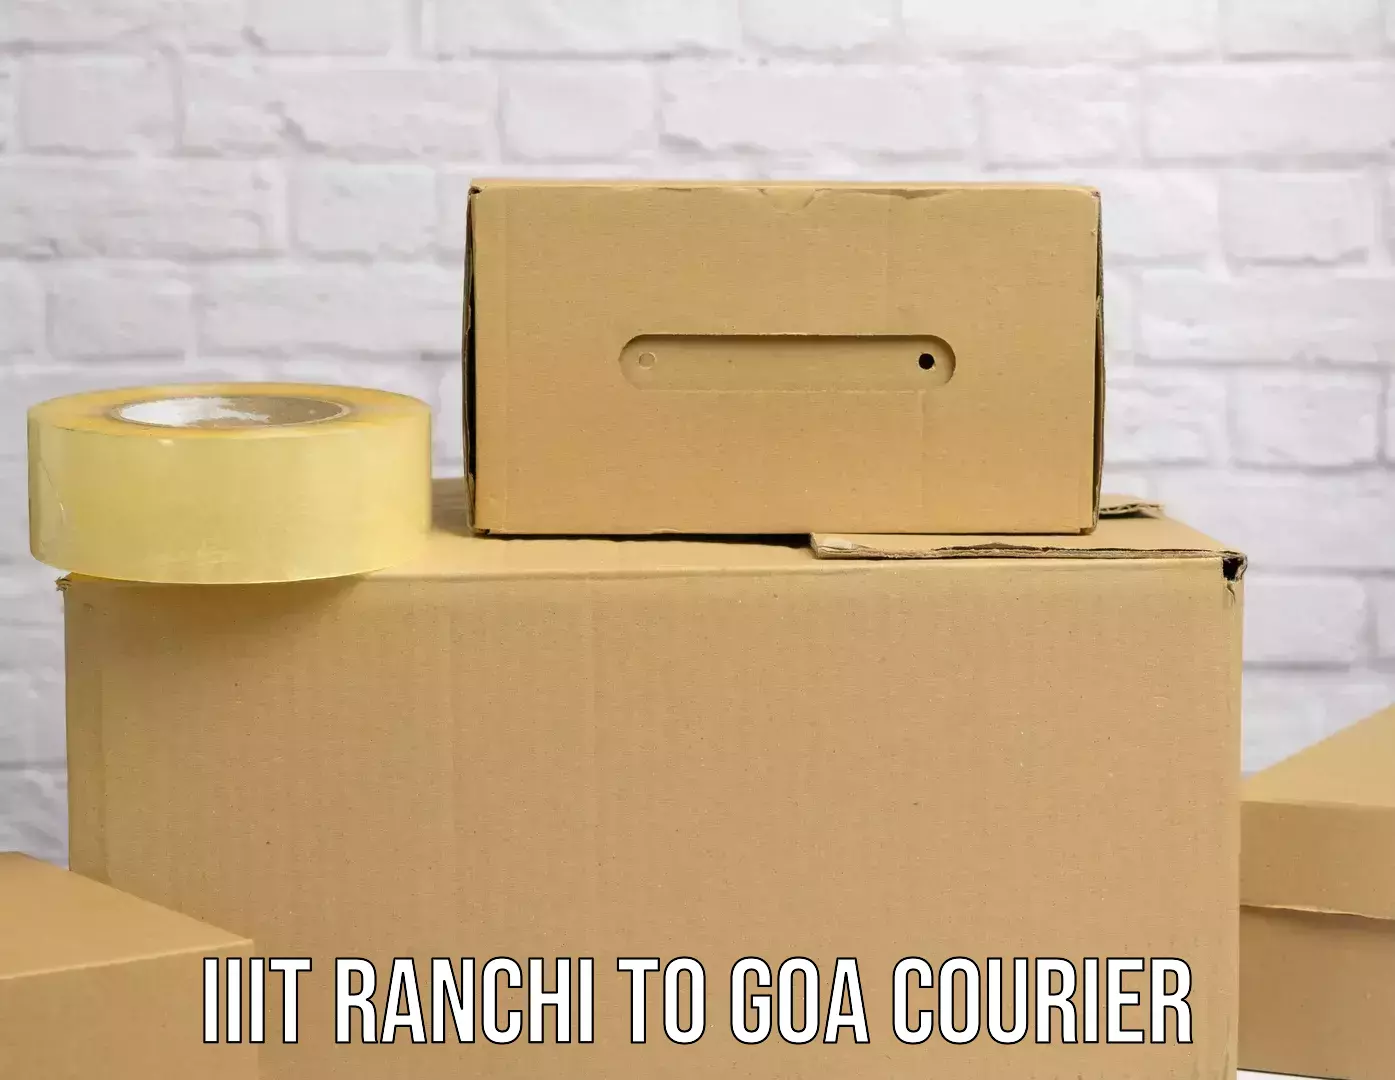 Bulk courier orders IIIT Ranchi to Goa